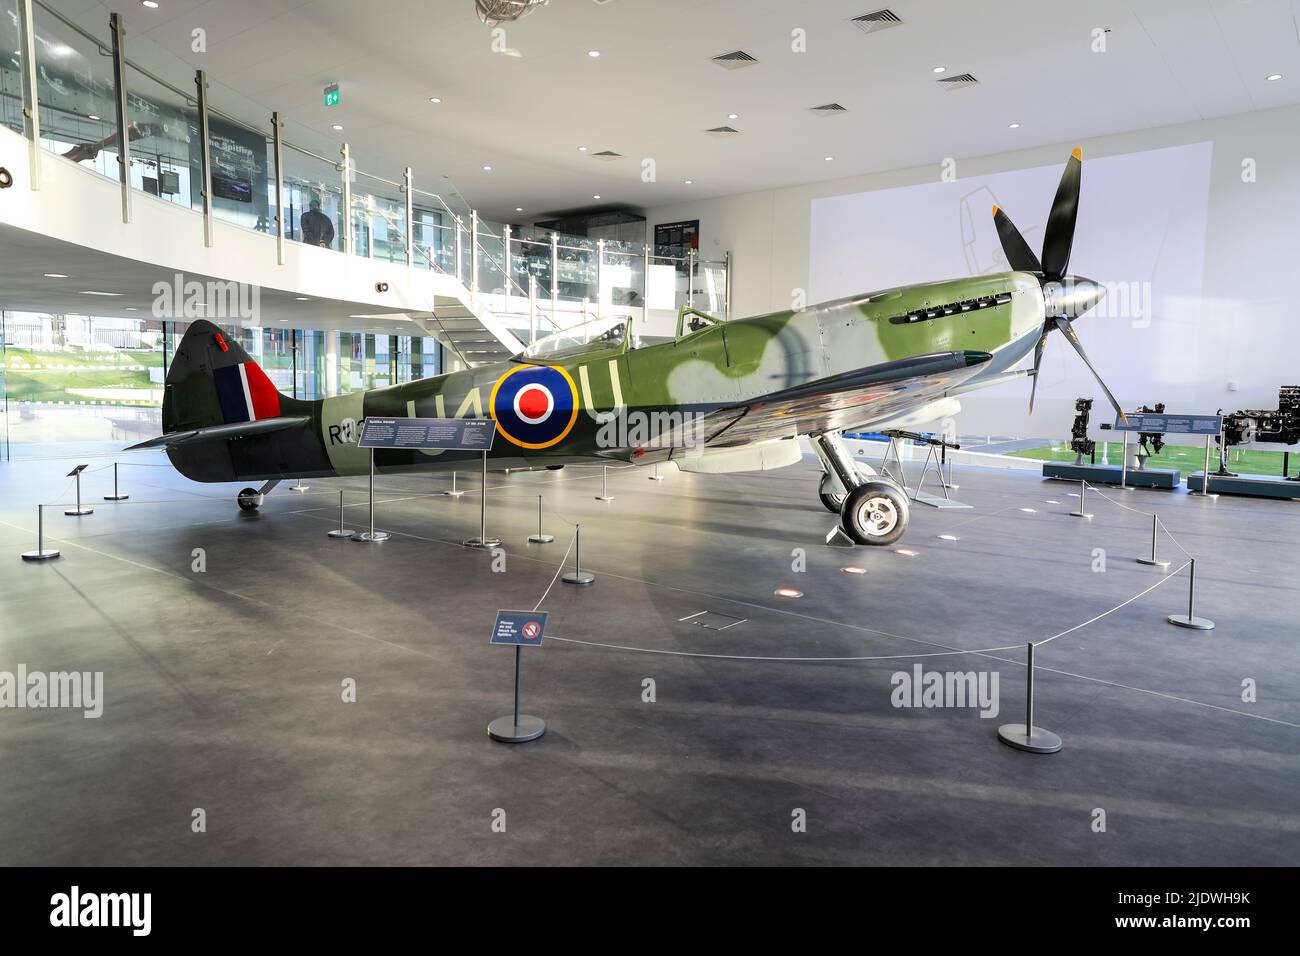 Spitfire RW388 avión en exhibición en el Museo de las Cercanías y Galería de Arte, Hanley, Stoke-on-Trent, Staffs, Inglaterra, REINO UNIDO Foto de stock